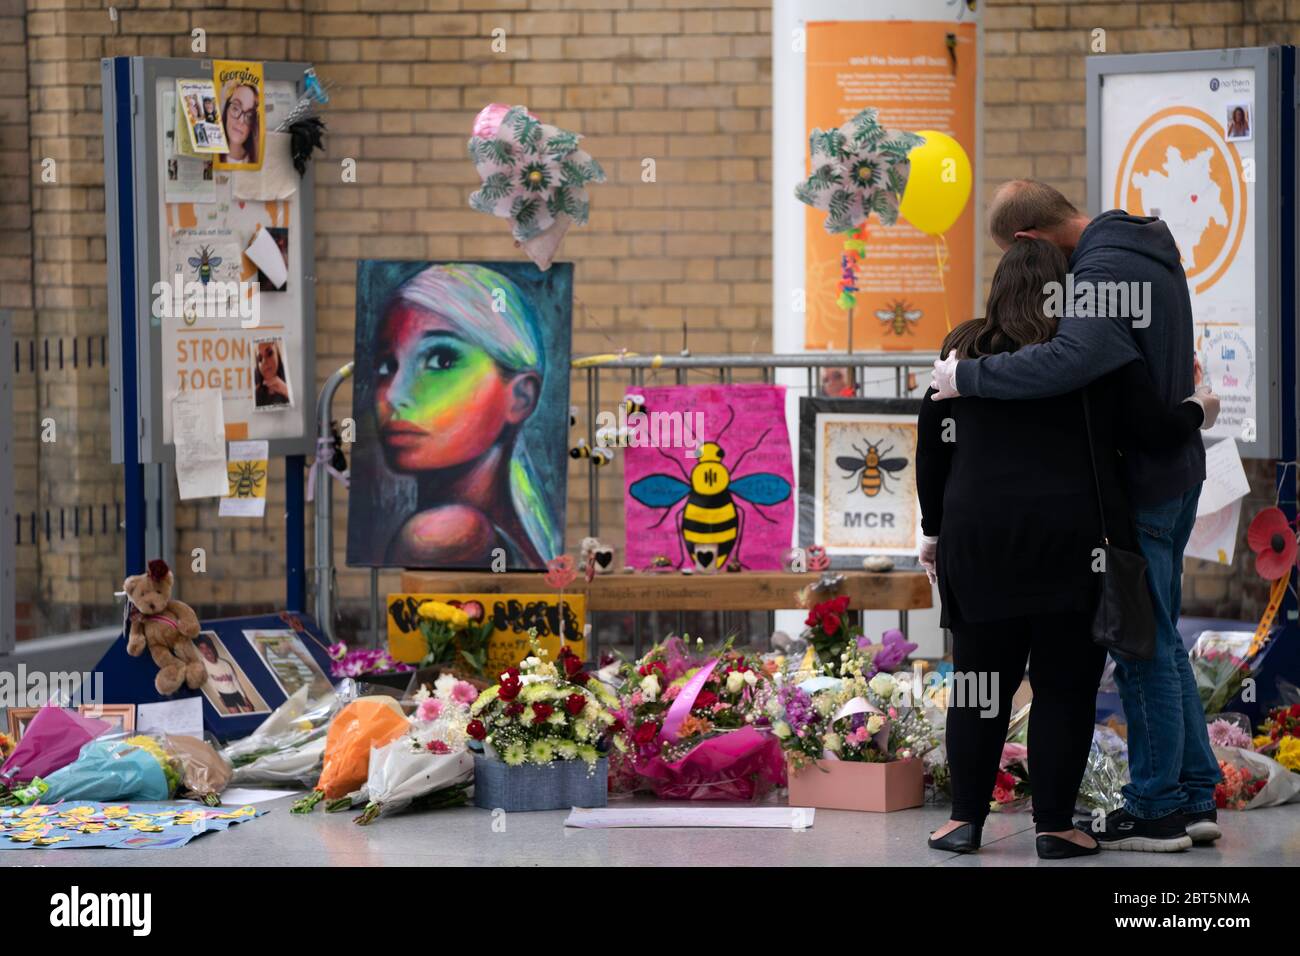 Manchester, Mai 22. Mai 2017. Die Menschen trauern bei einem Gedenkort des Angriffs auf die Manchester Arena in Manchester, Großbritannien, am 22. Mai 2020. Manchester am Freitag war der dritte Jahrestag des Terroranschlags, bei dem 22 Menschen getötet und Hunderte verletzt wurden. Der Angriff geschah, als Salman Abedi am Ende eines Konzerts der US-Popsängerin Ariana Grande am 22. Mai 2017 eine Bombe zündete. Kredit: Jon Super/Xinhua/Alamy Live News Stockfoto